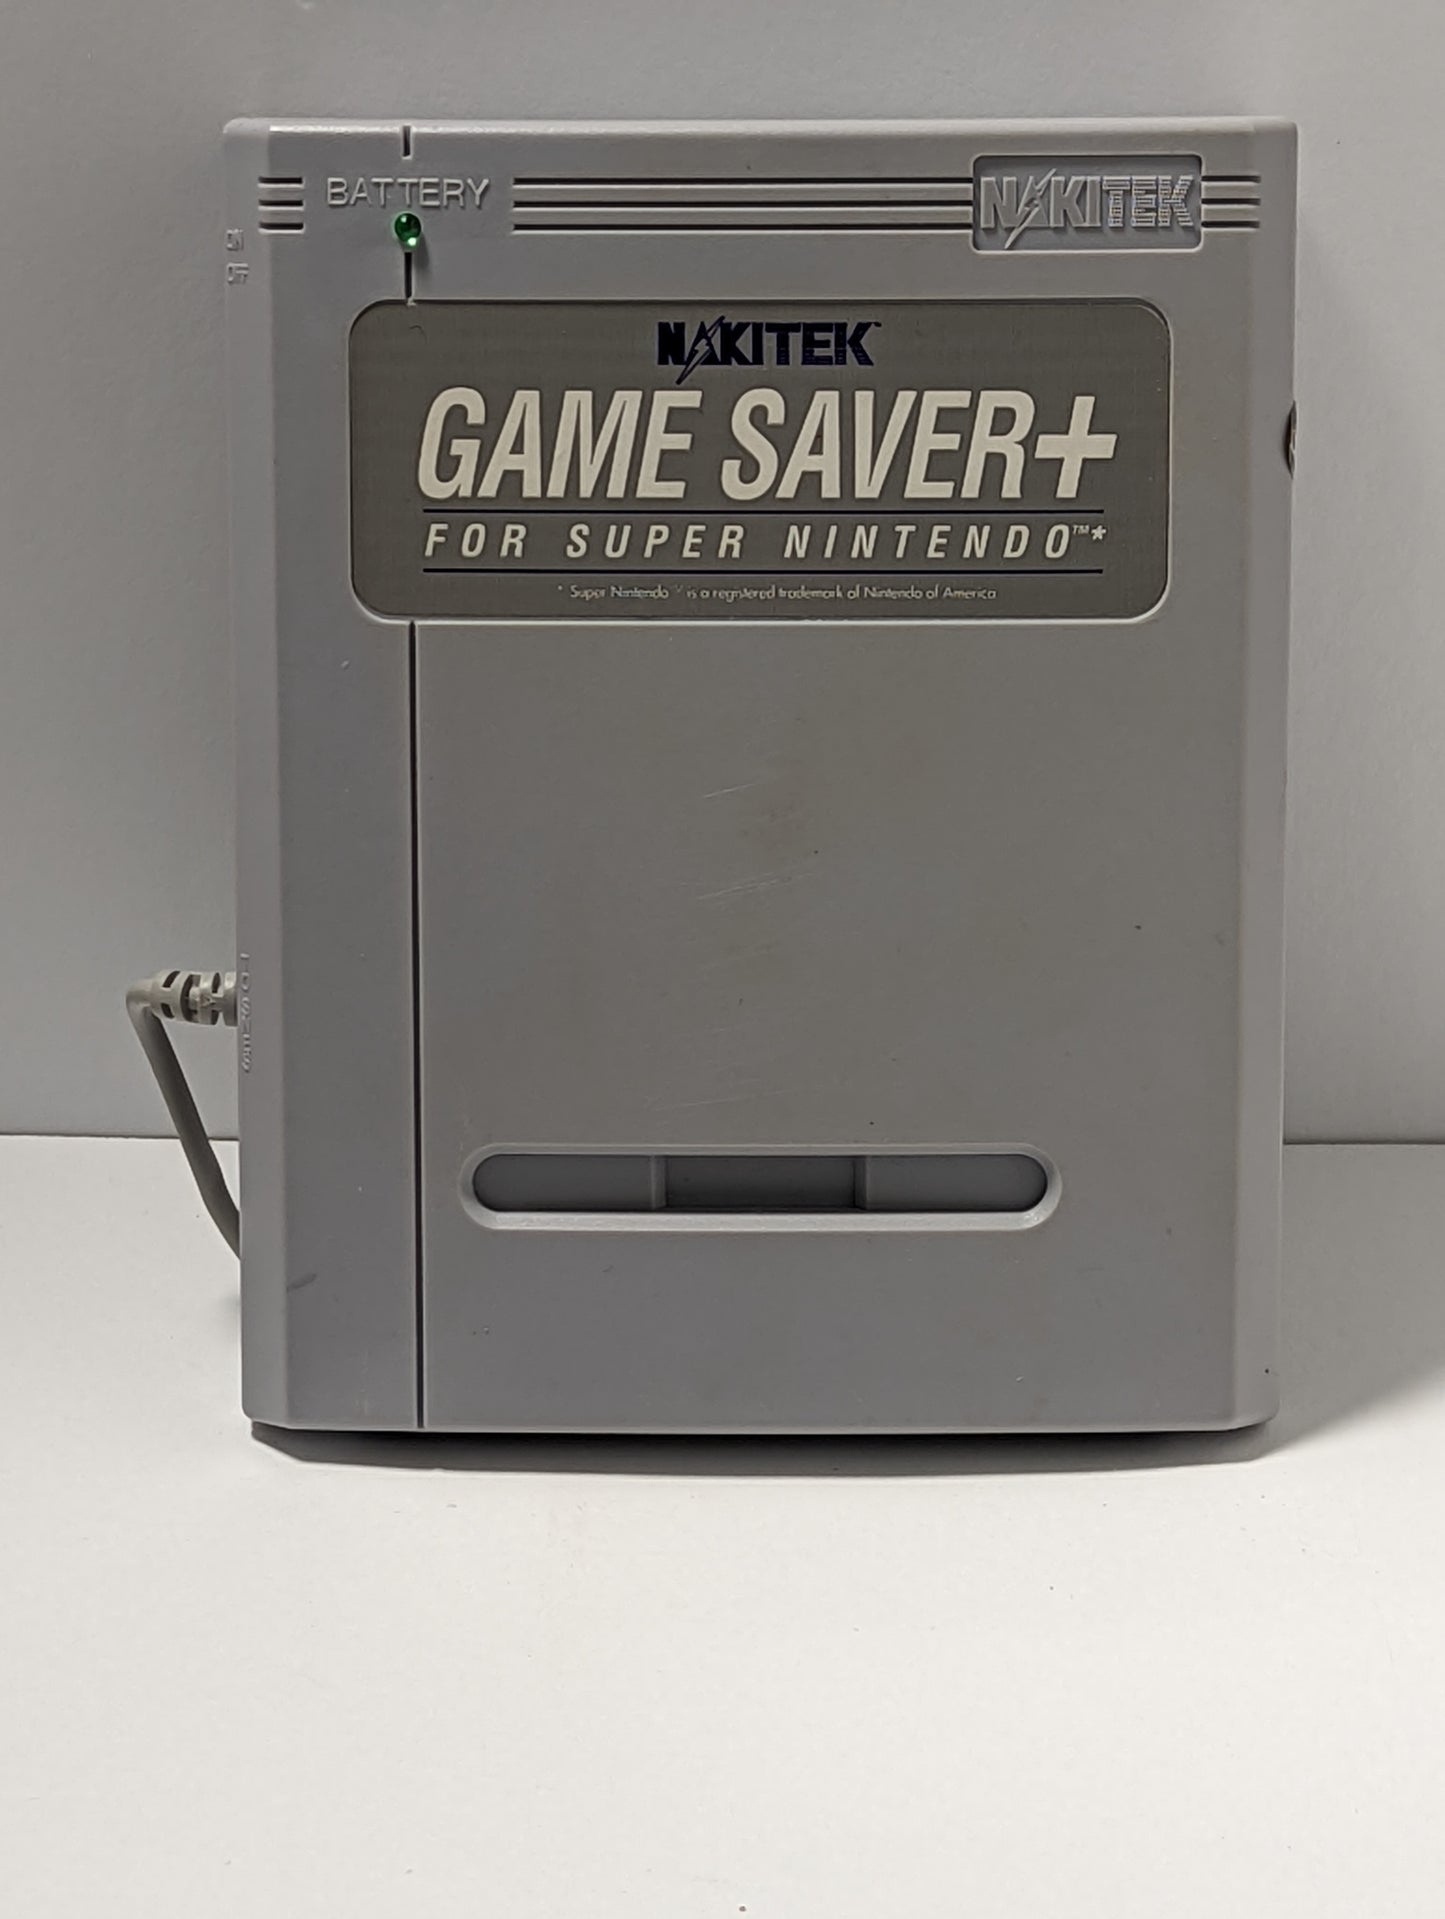 Super Nintendo Super Famicom Game Saver +